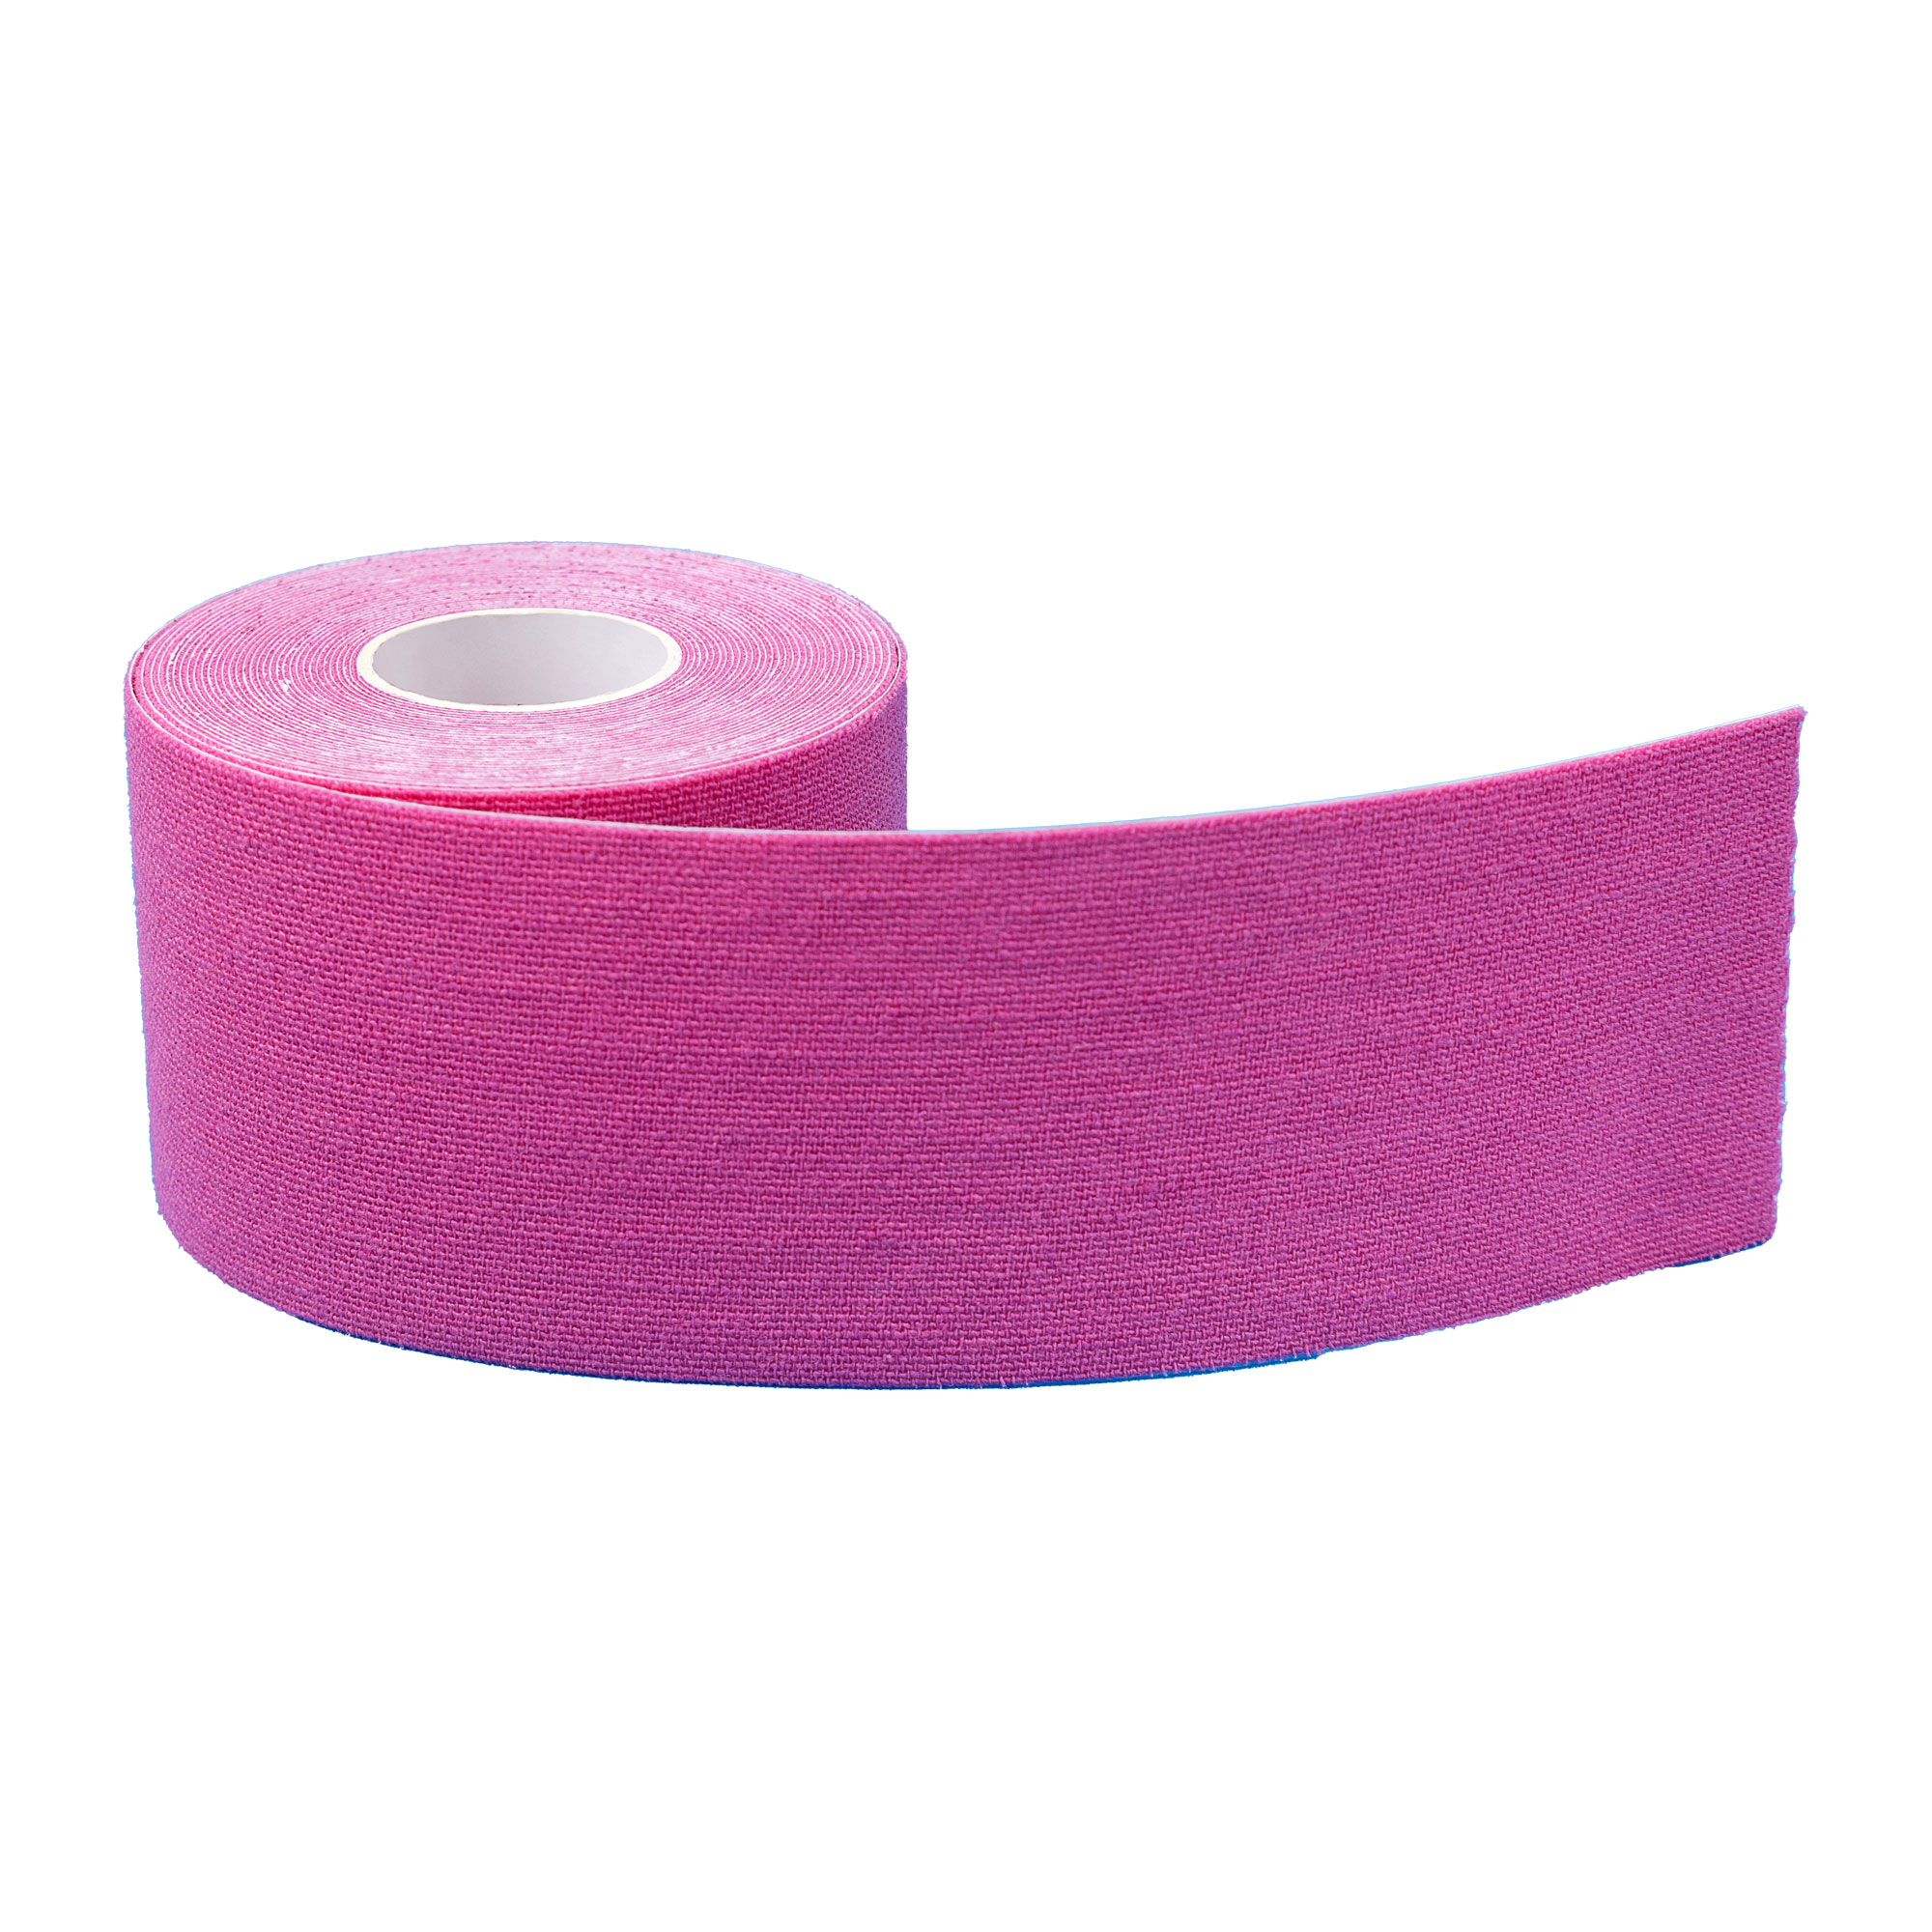 Elastischer Tapeverband für den Einsatz in der Kinesiologie. Farbe: pink.